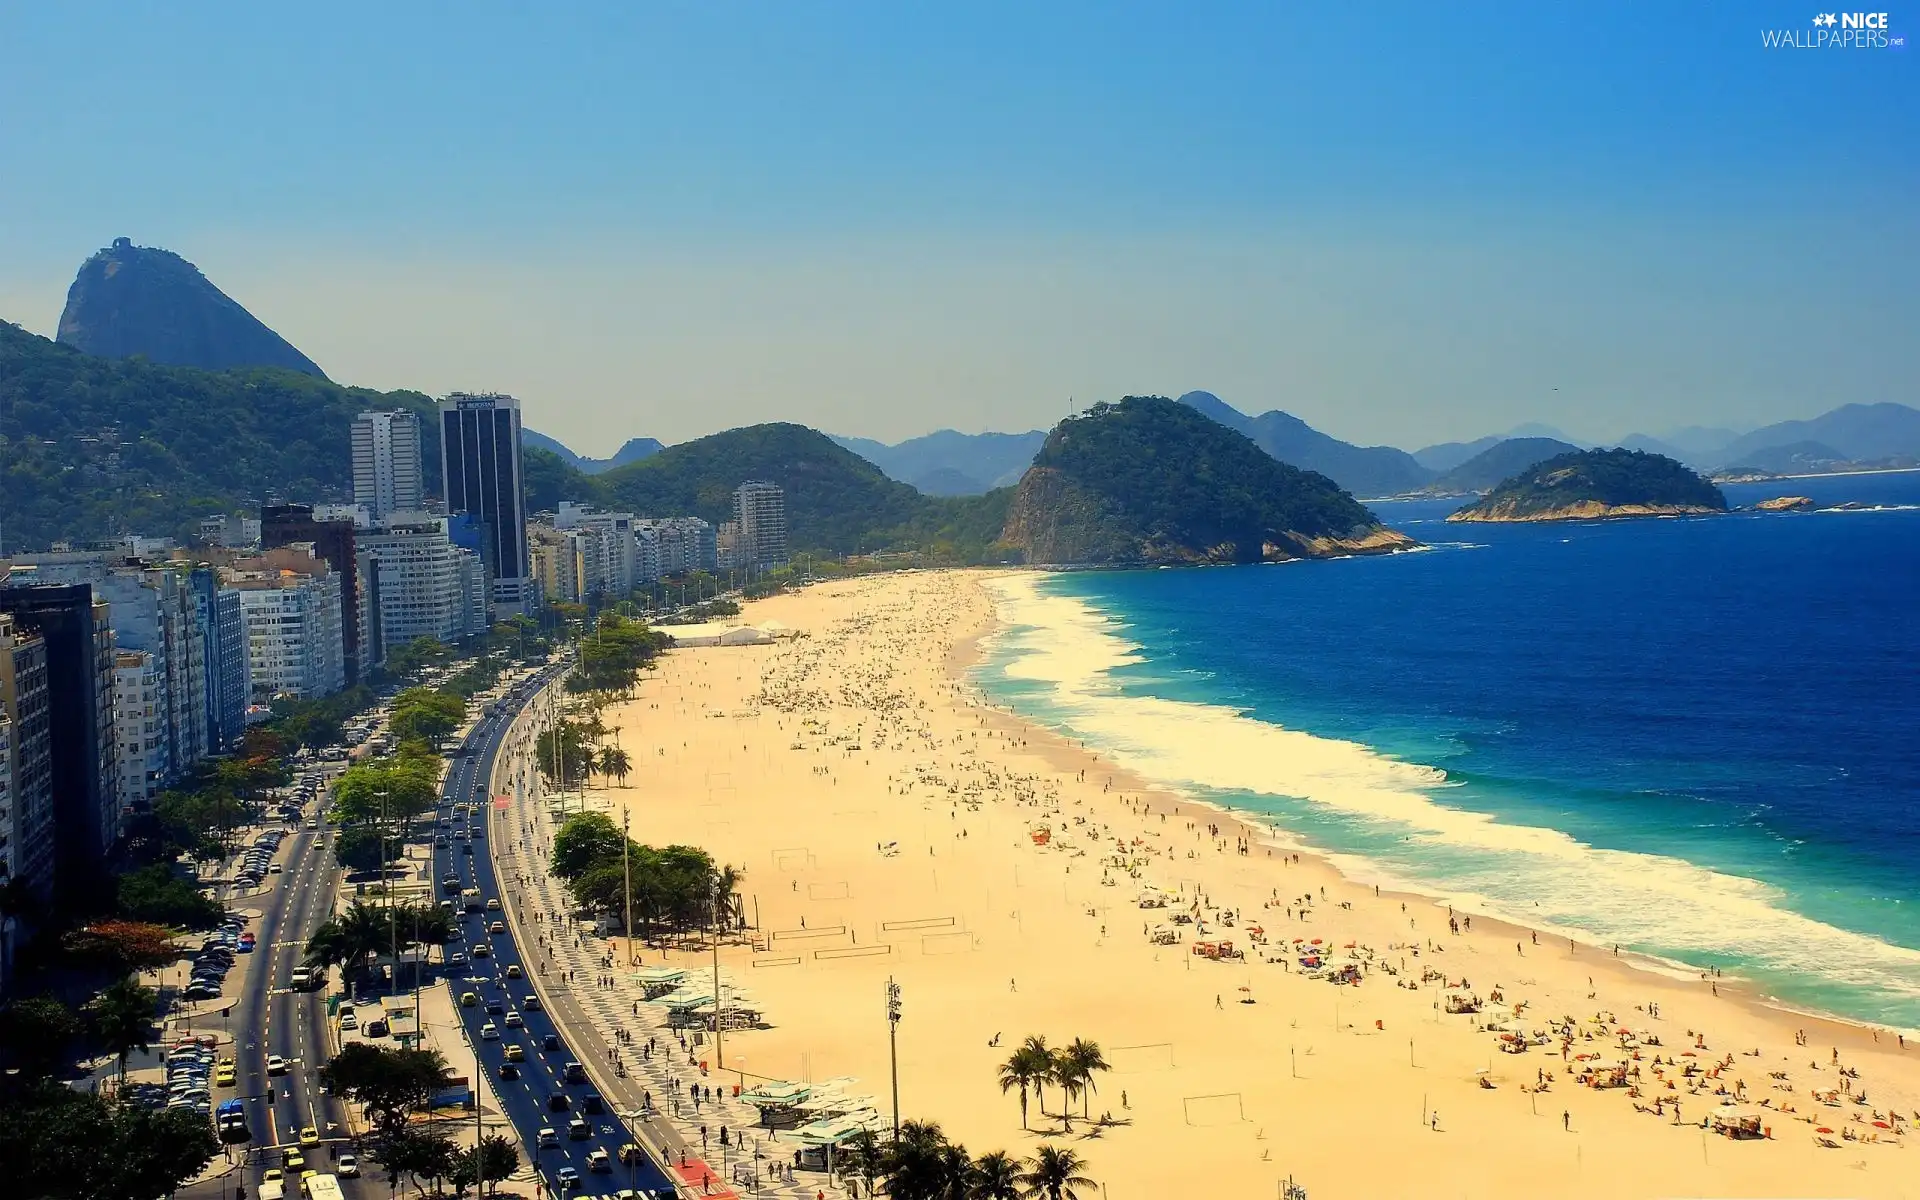 Rio de Janerio, Beaches, Copacabana